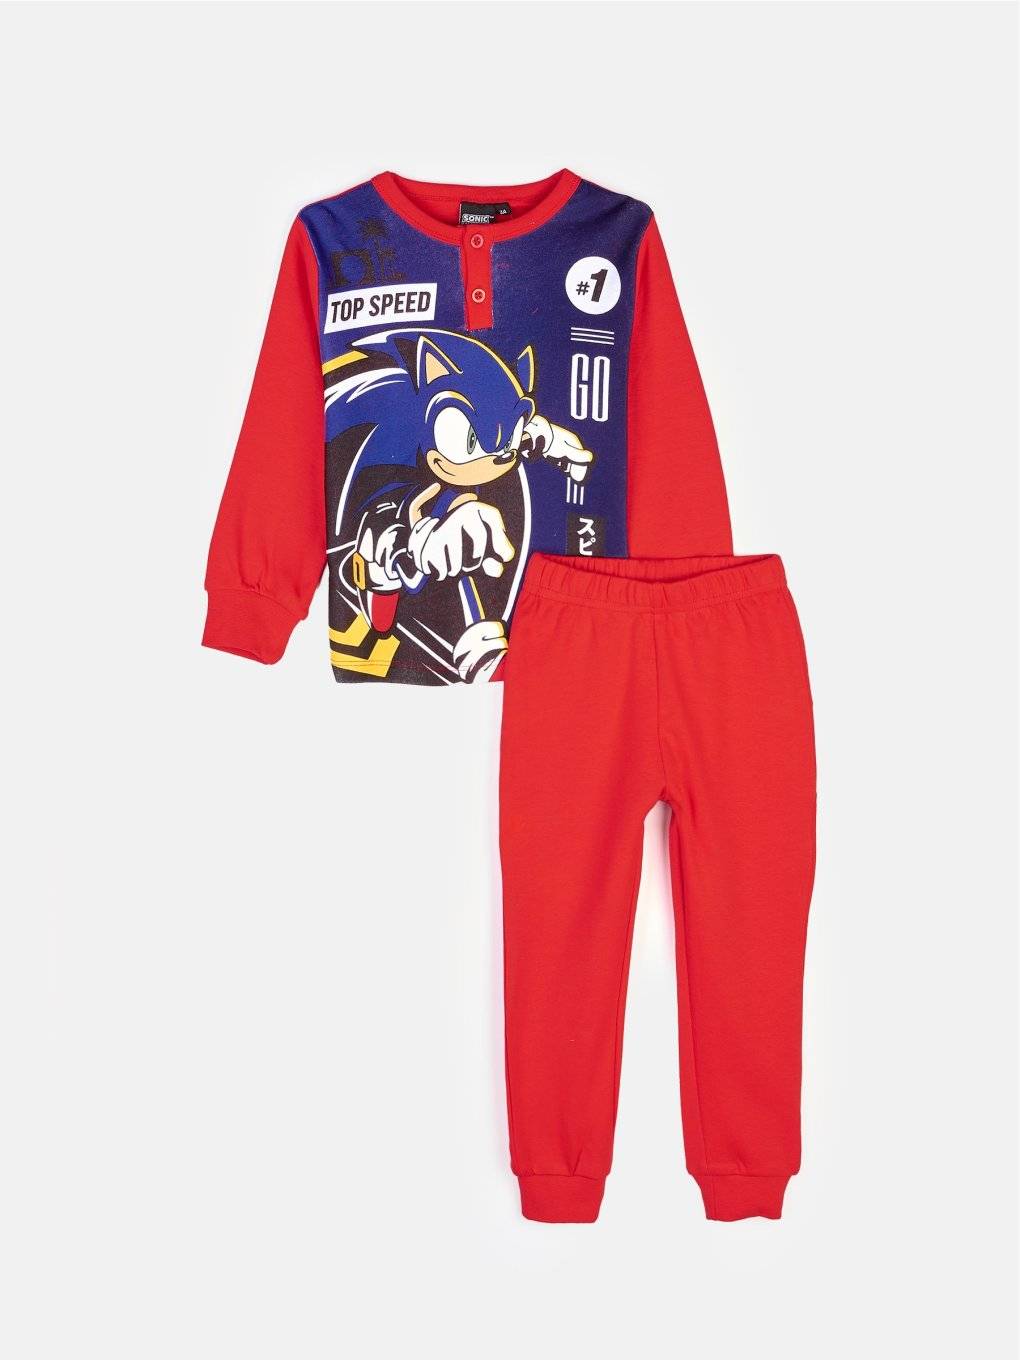 Sonic kétrészes pizsama